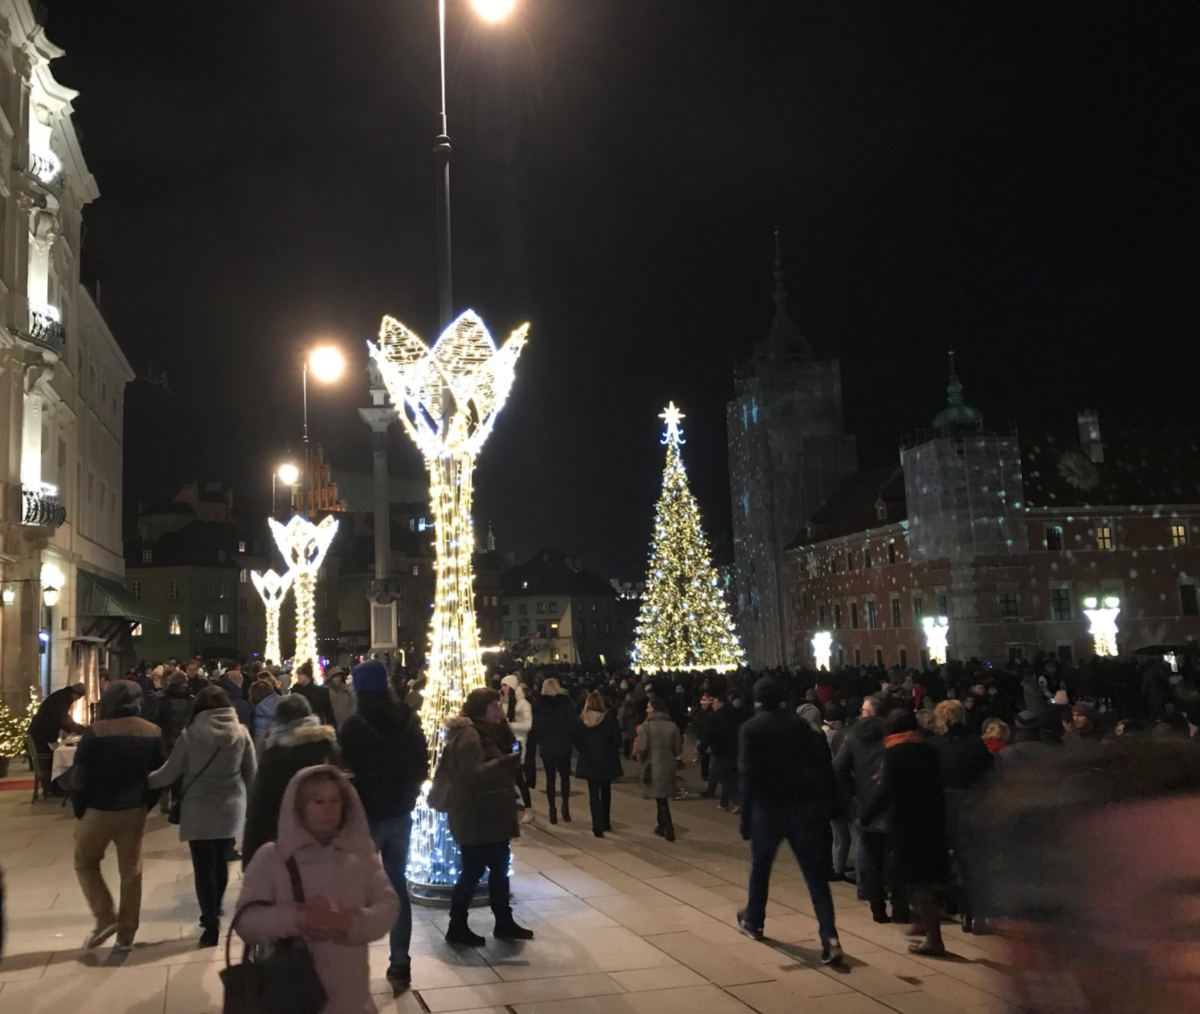 Iluminacja świąteczna w Warszawie 